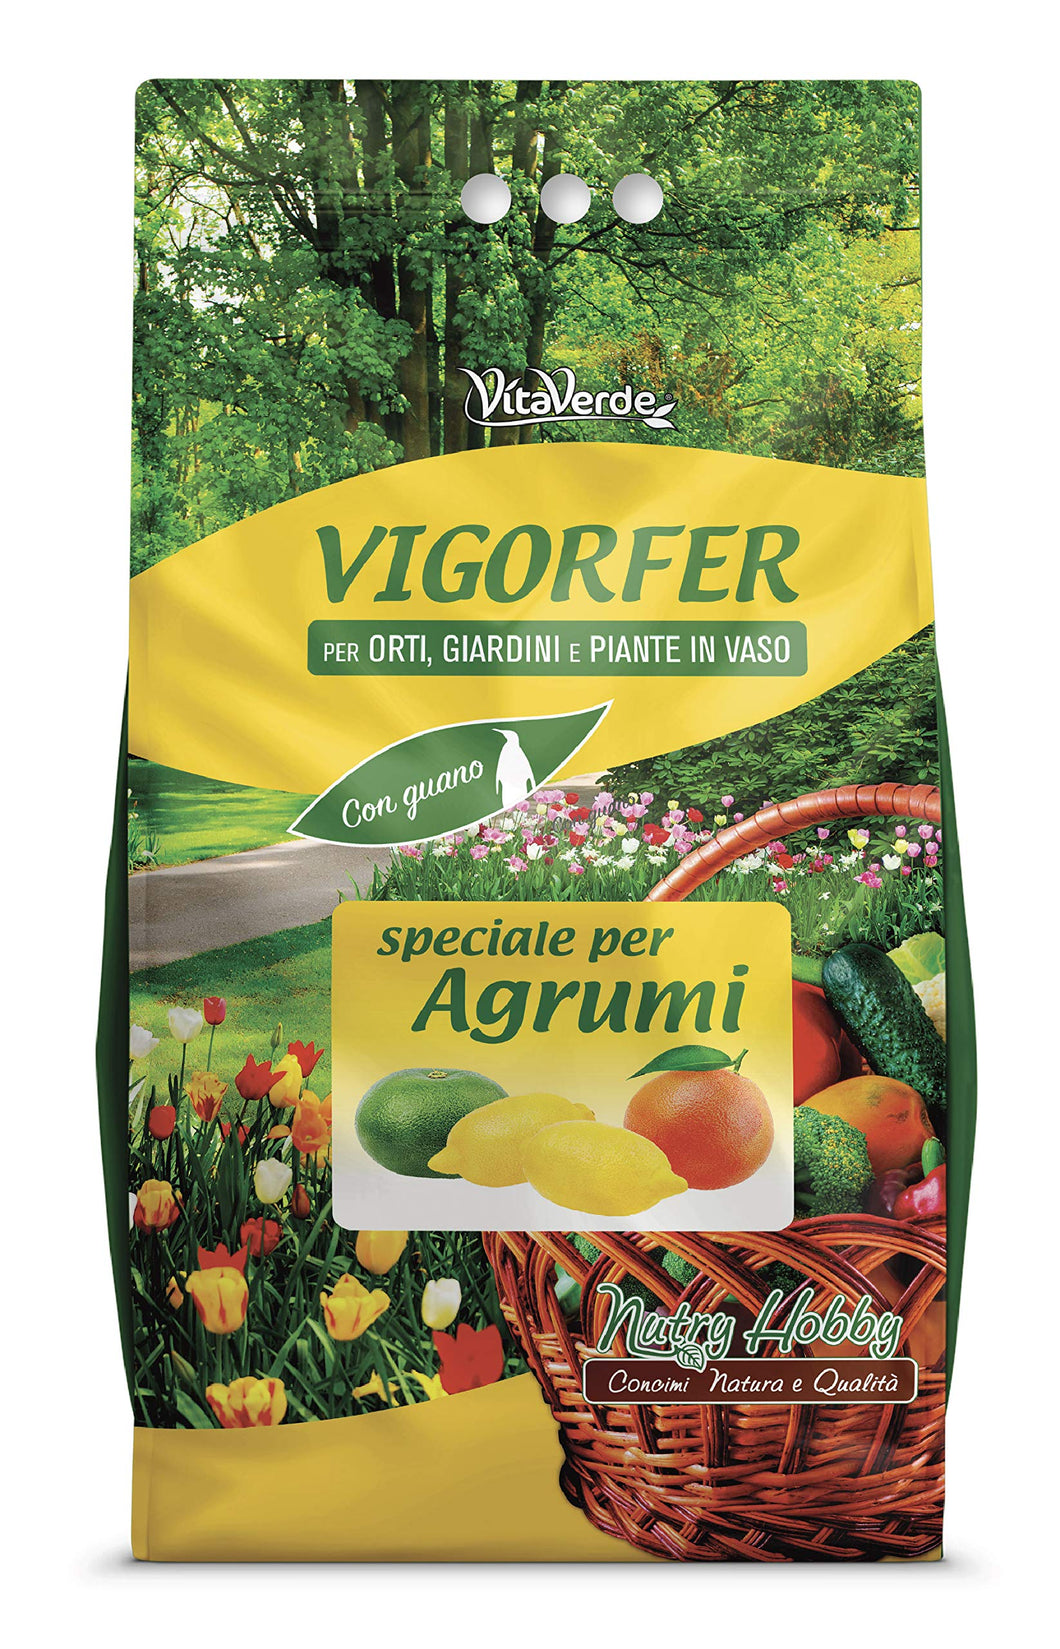 VIGORFER AGRUMI, concime granulare per agrumi con guano, kg 5, Vitaverde - Ilgrandebazar